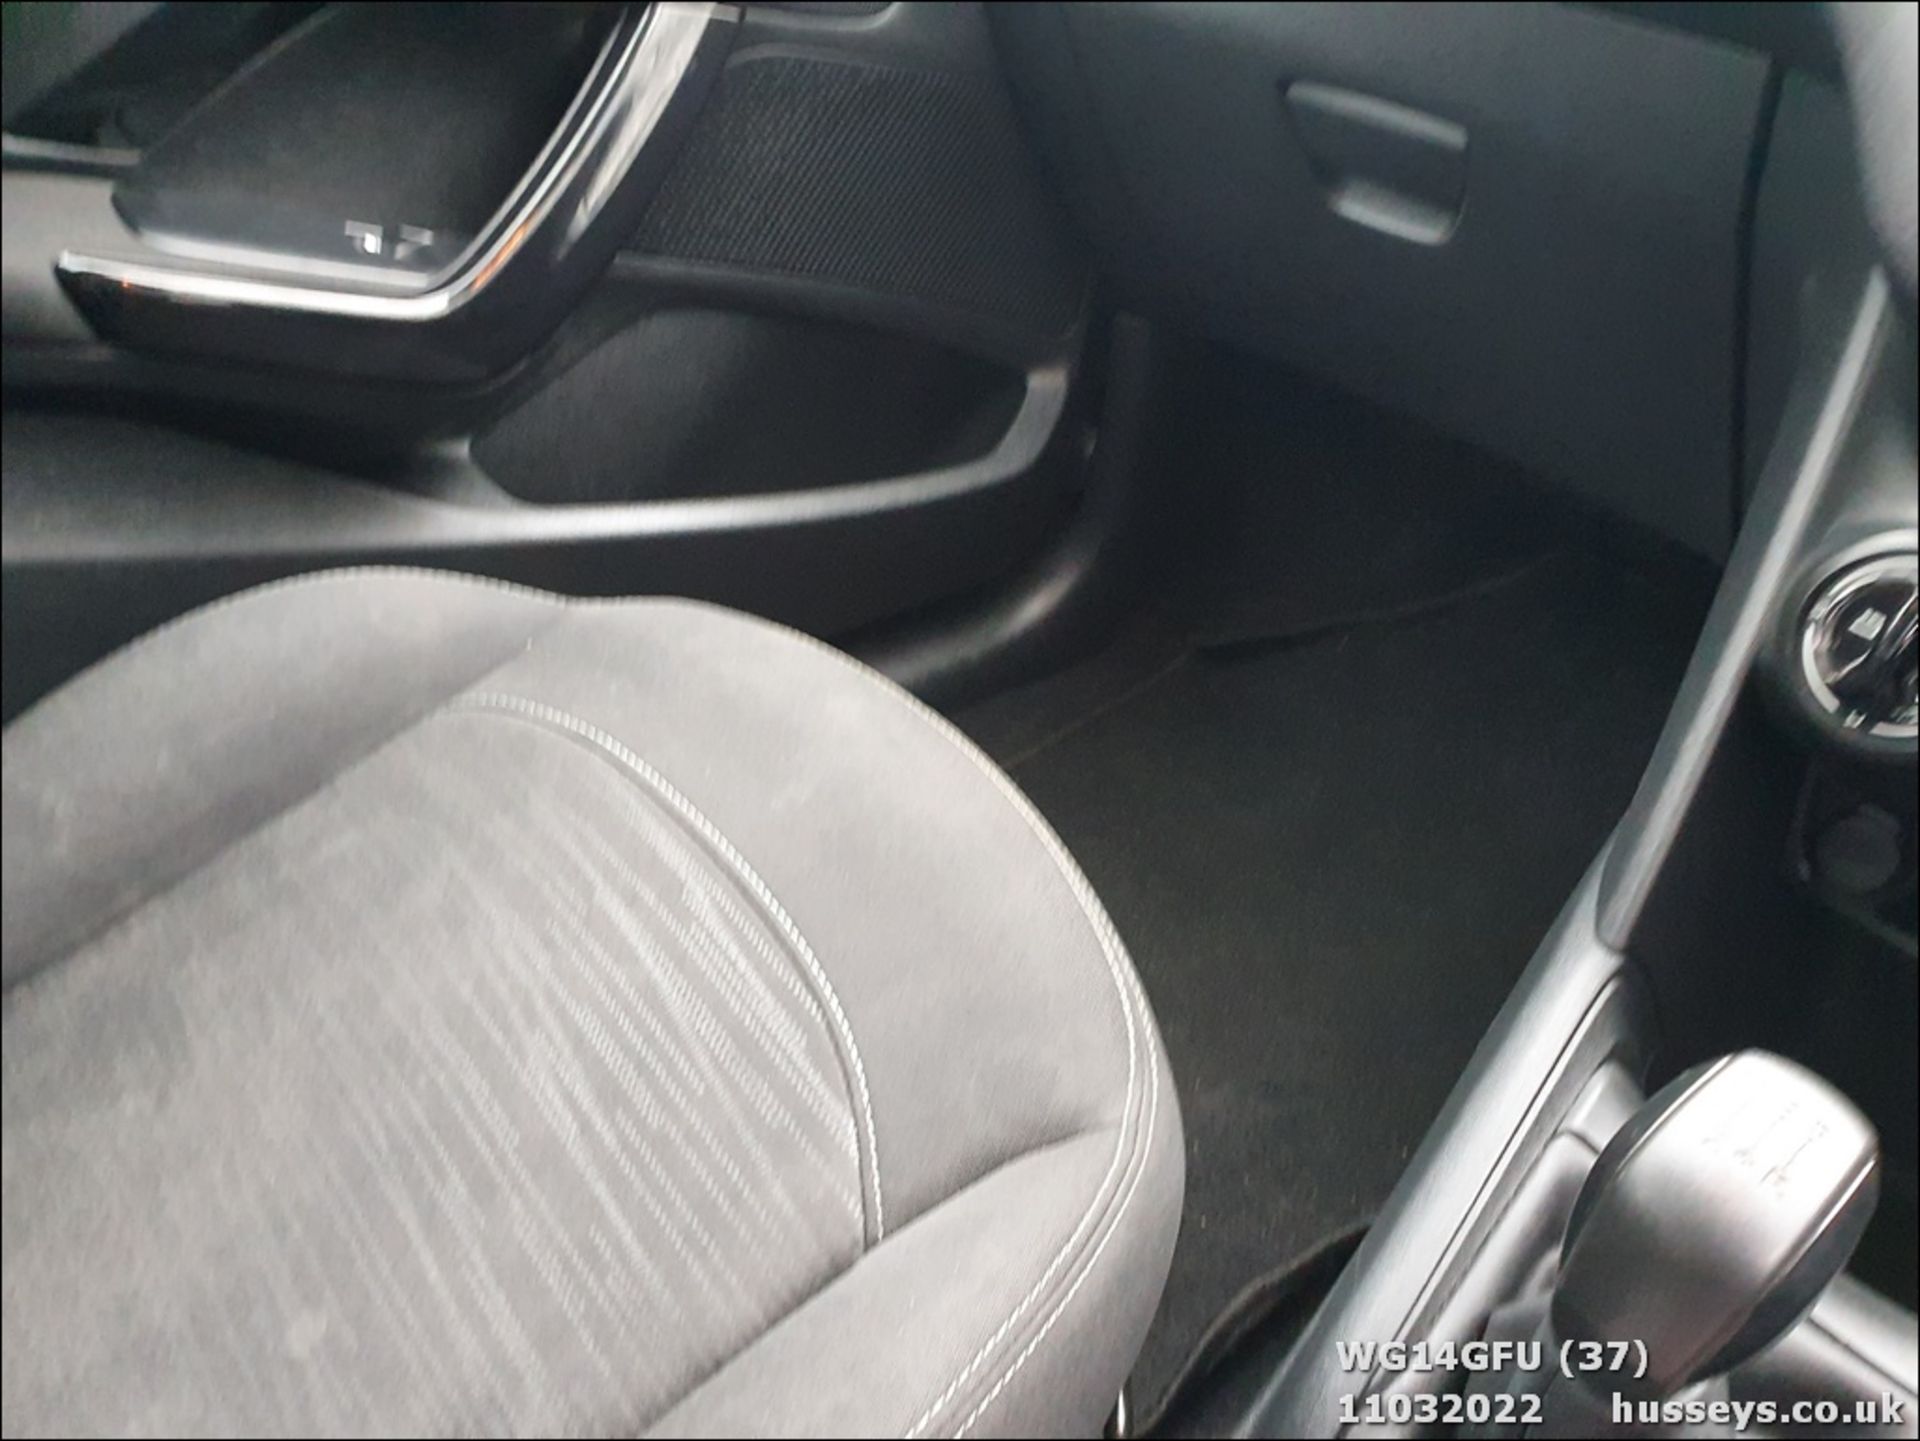 14/14 PEUGEOT 208 ACCESS - 999cc 5dr Hatchback (Black, 72k) - Image 37 of 38